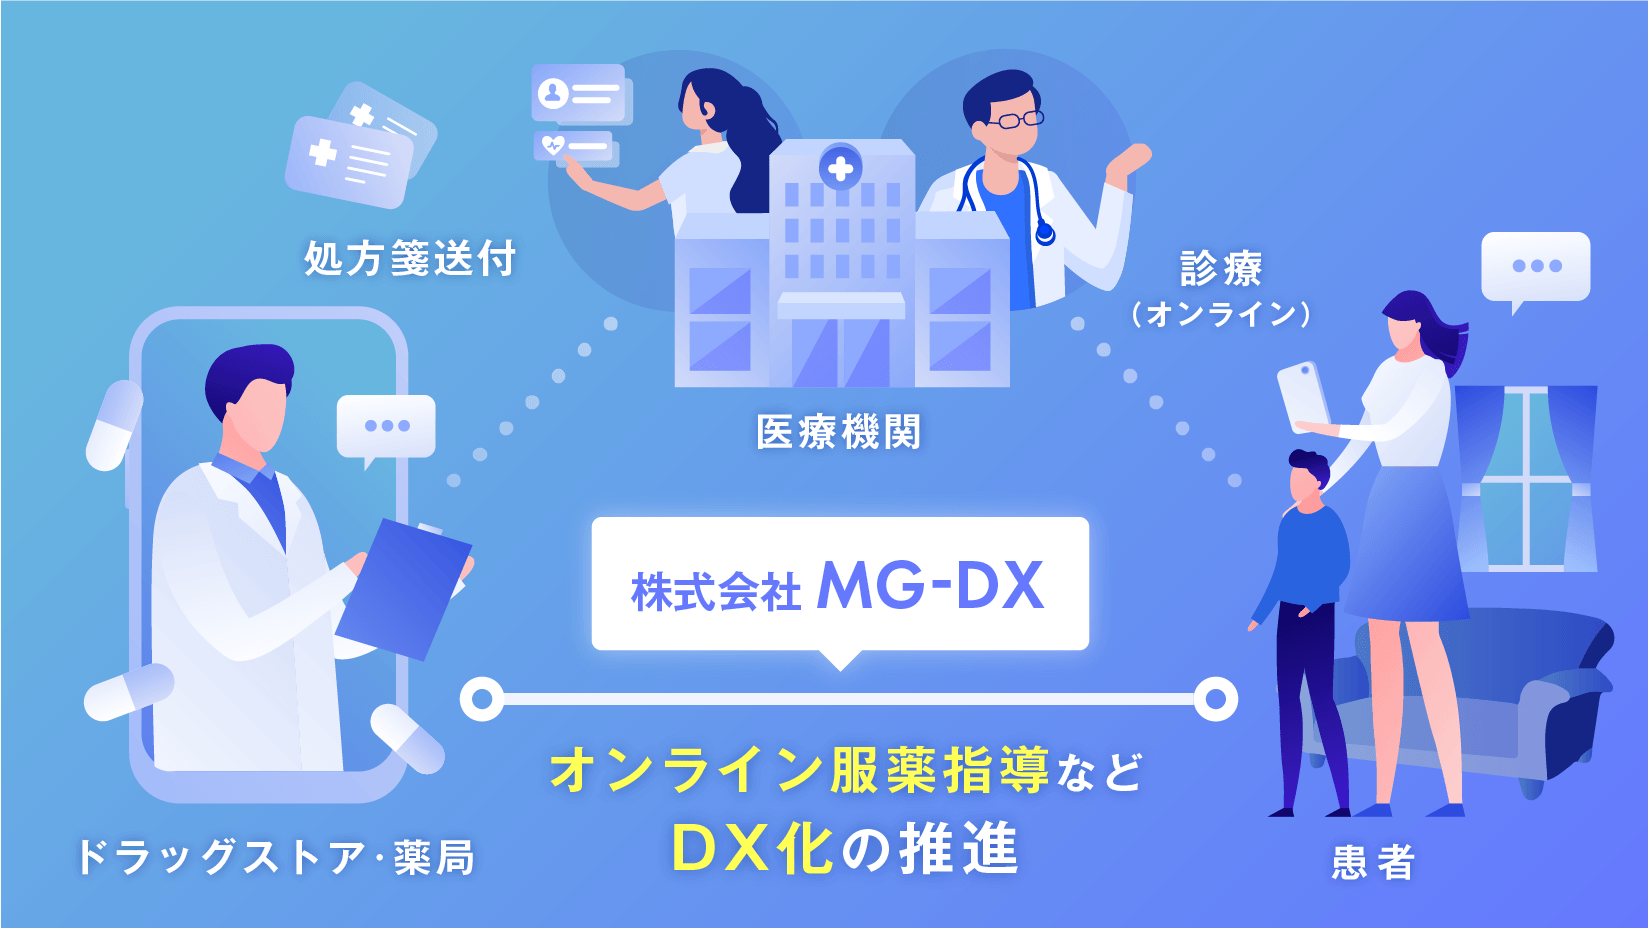 サイバーエージェント、株式会社MG-DX